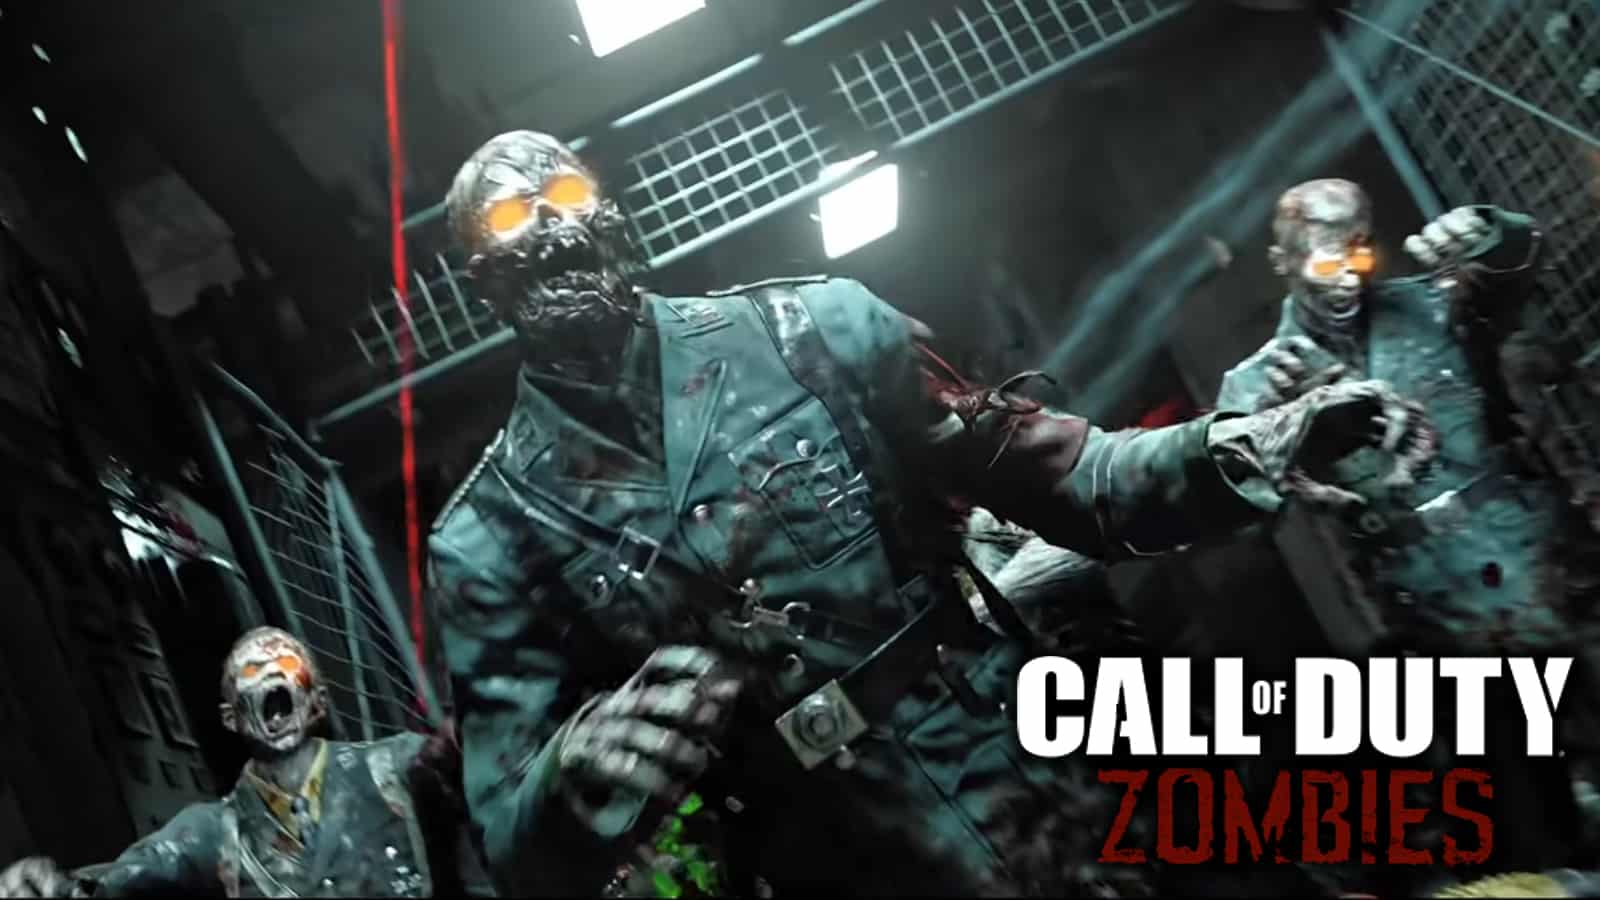 Call of Duty fan spots familiar Zombies scenes in The Day Before trailer -  Dexerto